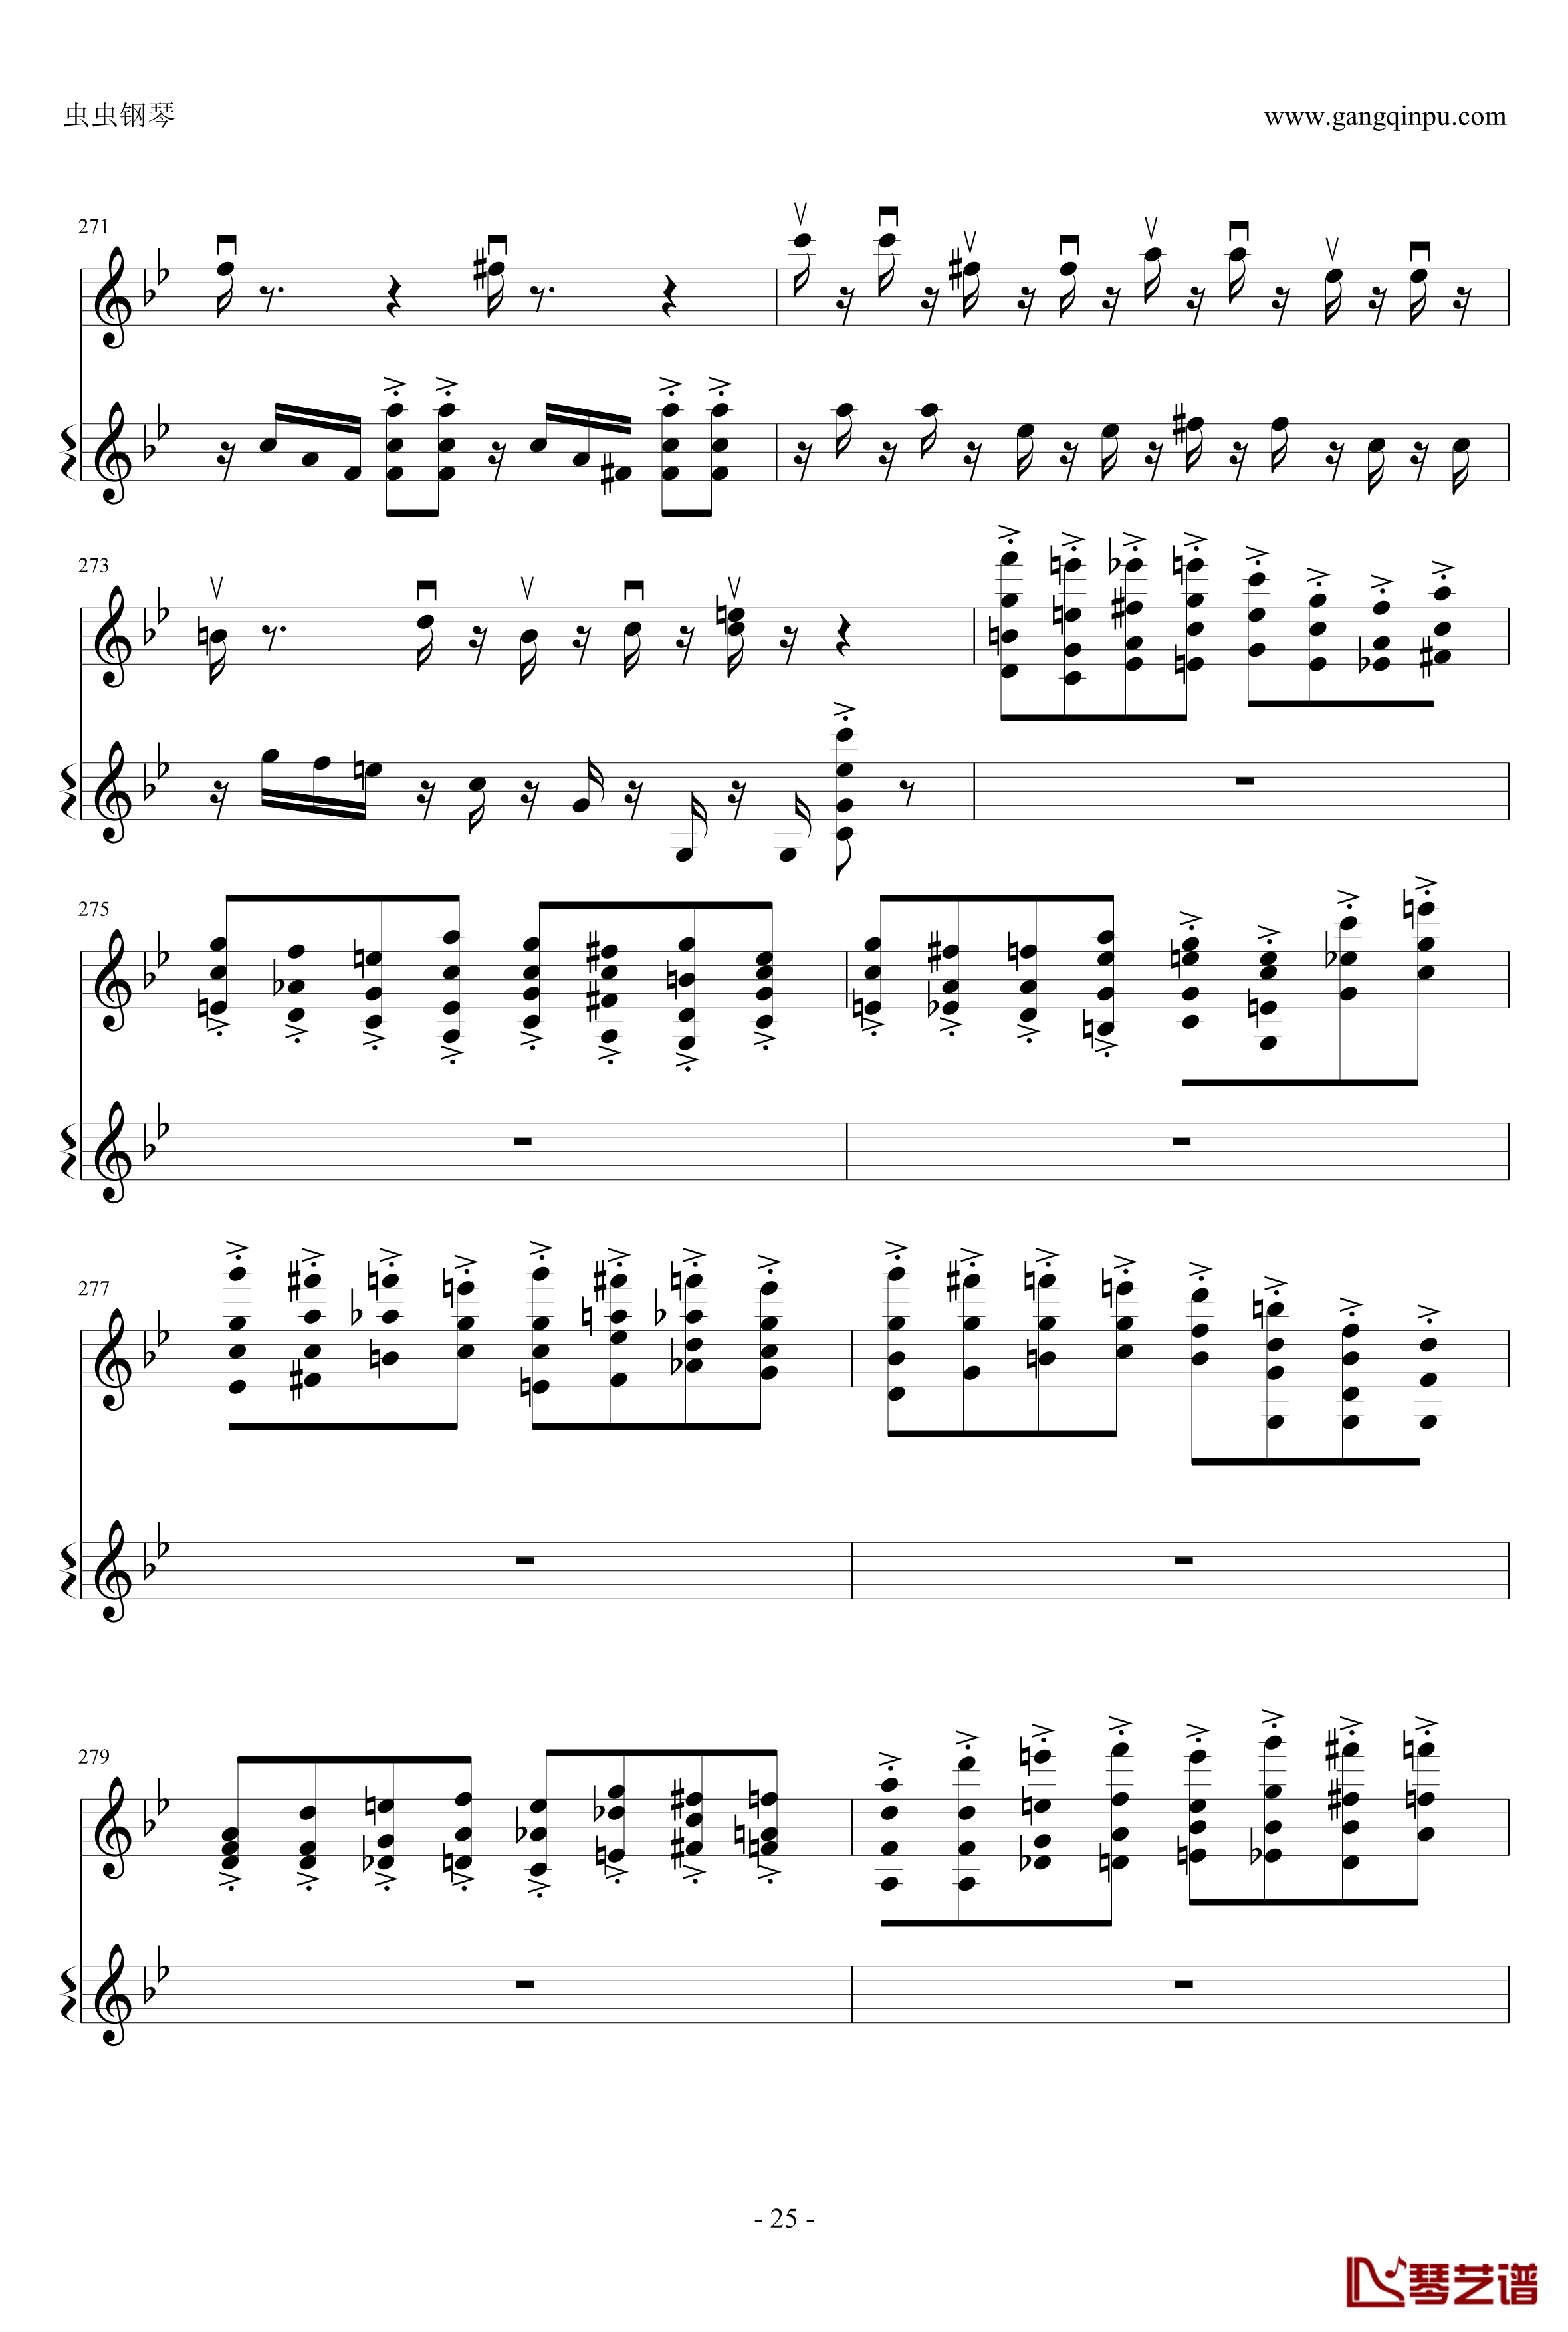 意大利国歌钢琴谱-变奏曲修改版-DXF25